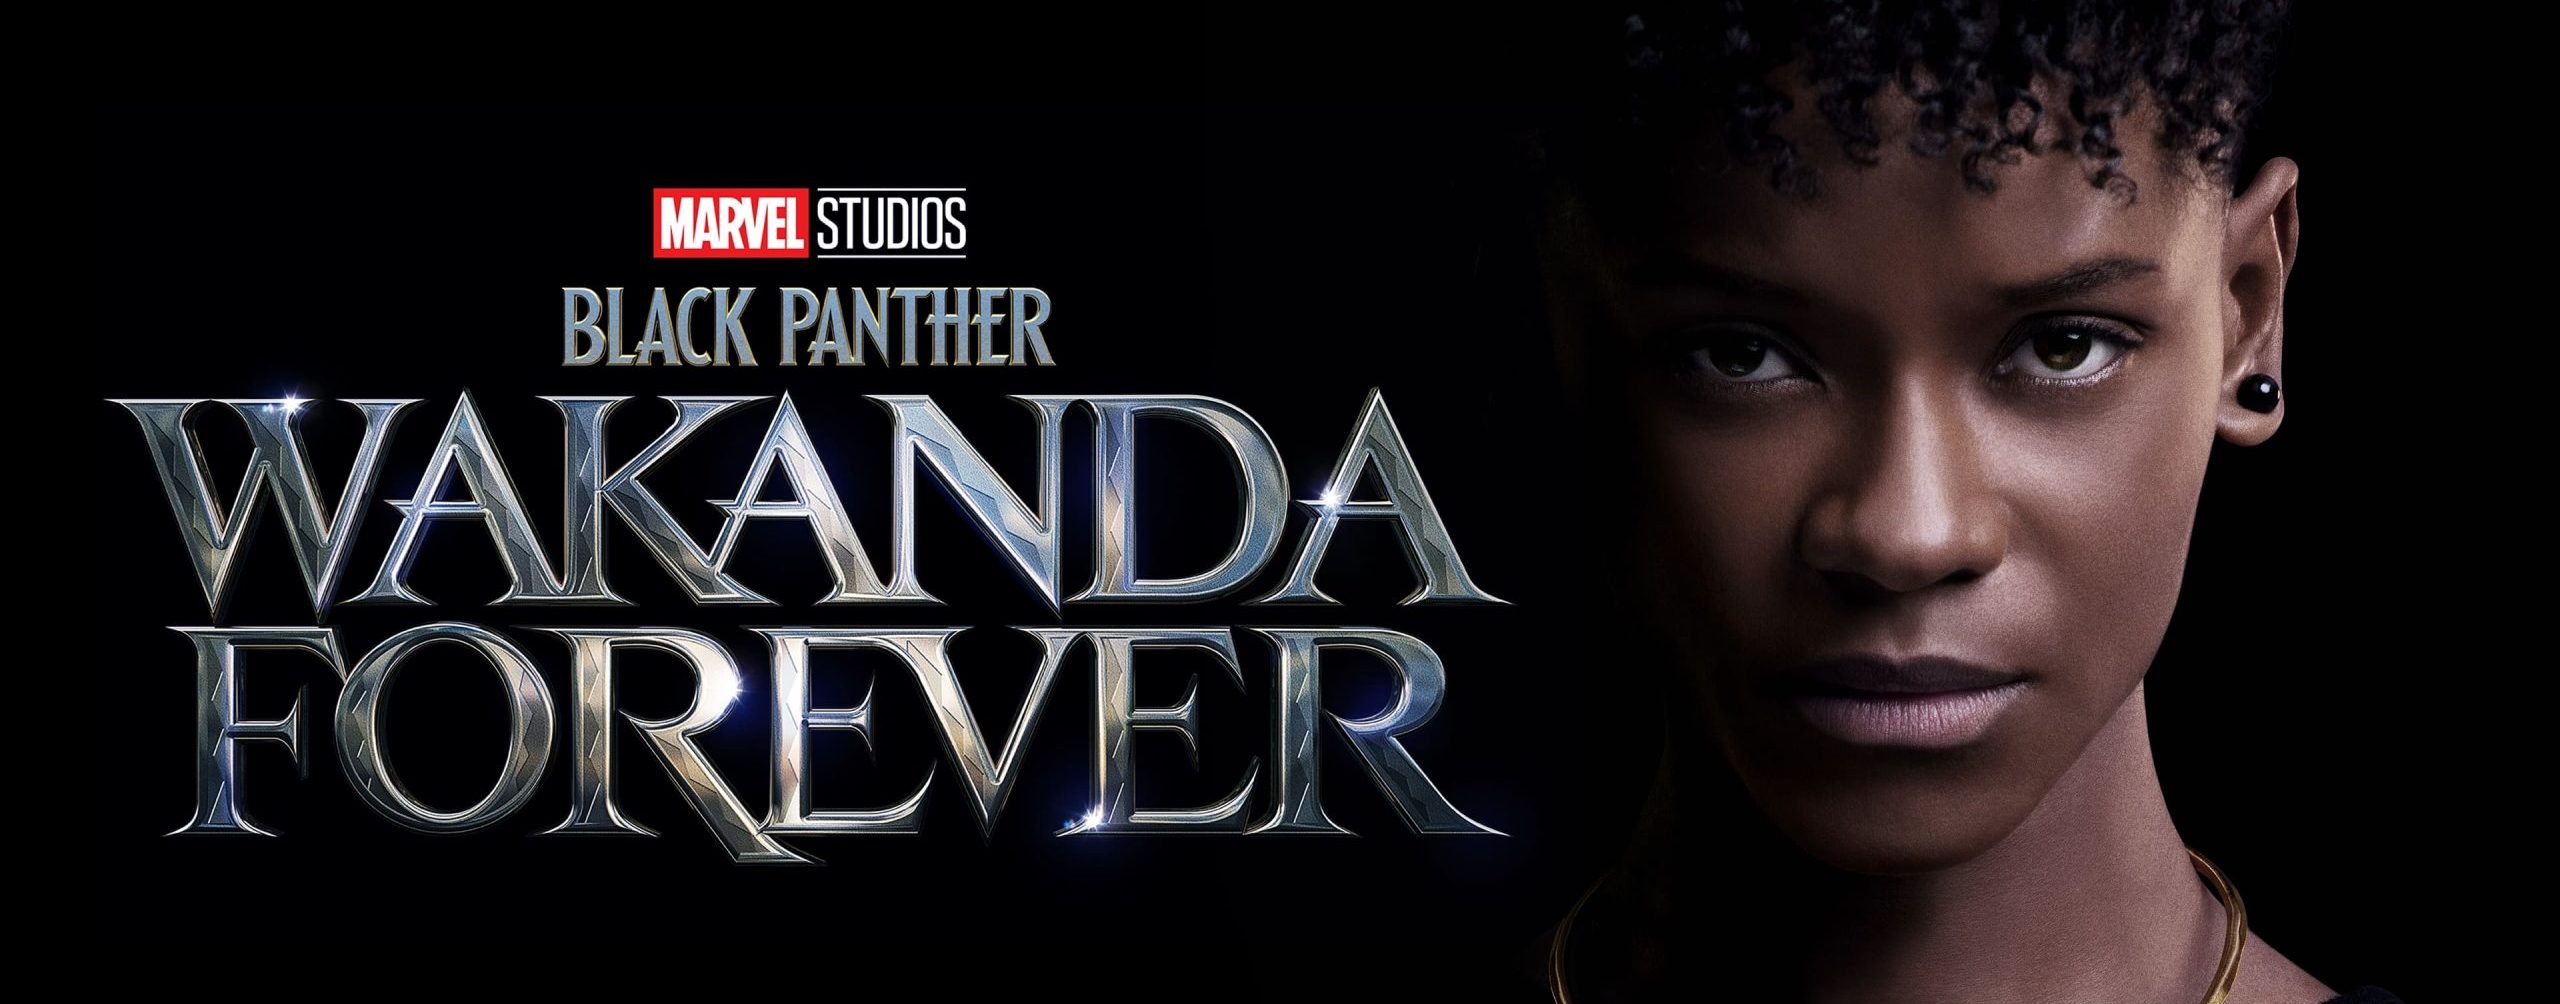 دانلود دوبله فارسی فیلم Black Panther: Wakanda Forever 2022